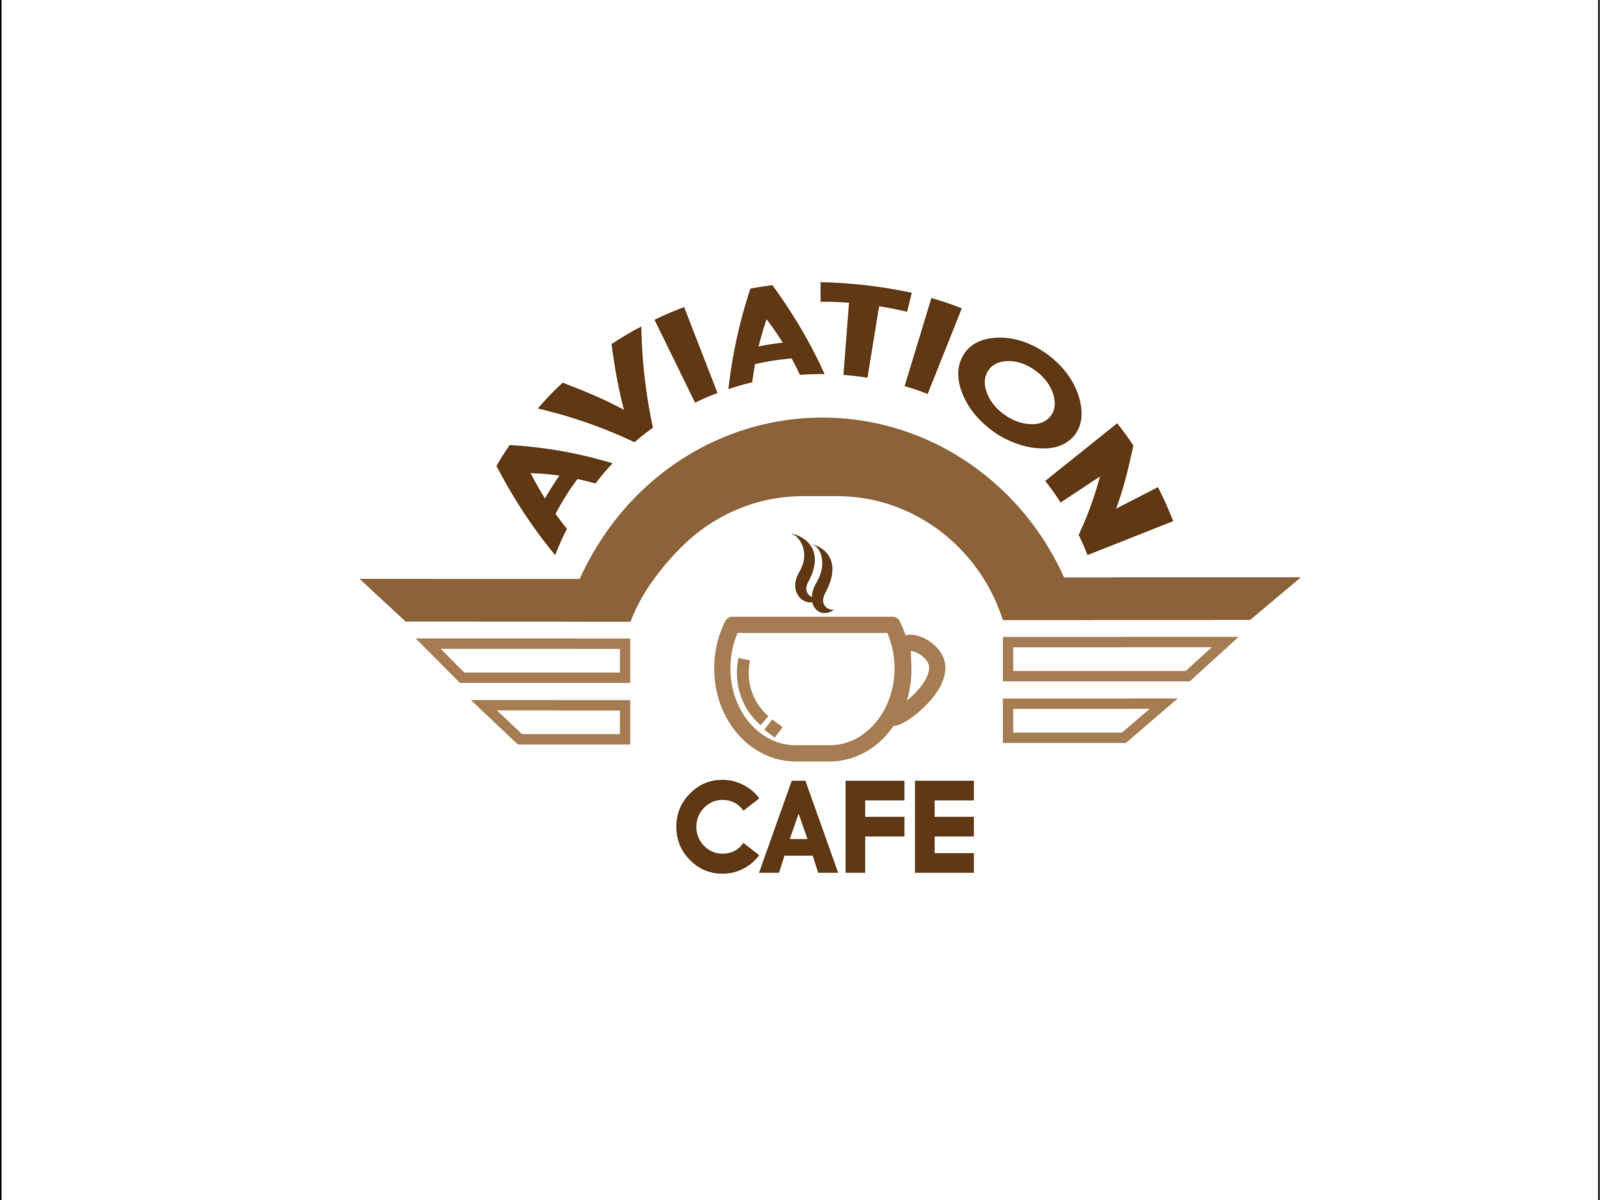 Aviation Cafe by hidayat on Dribbble